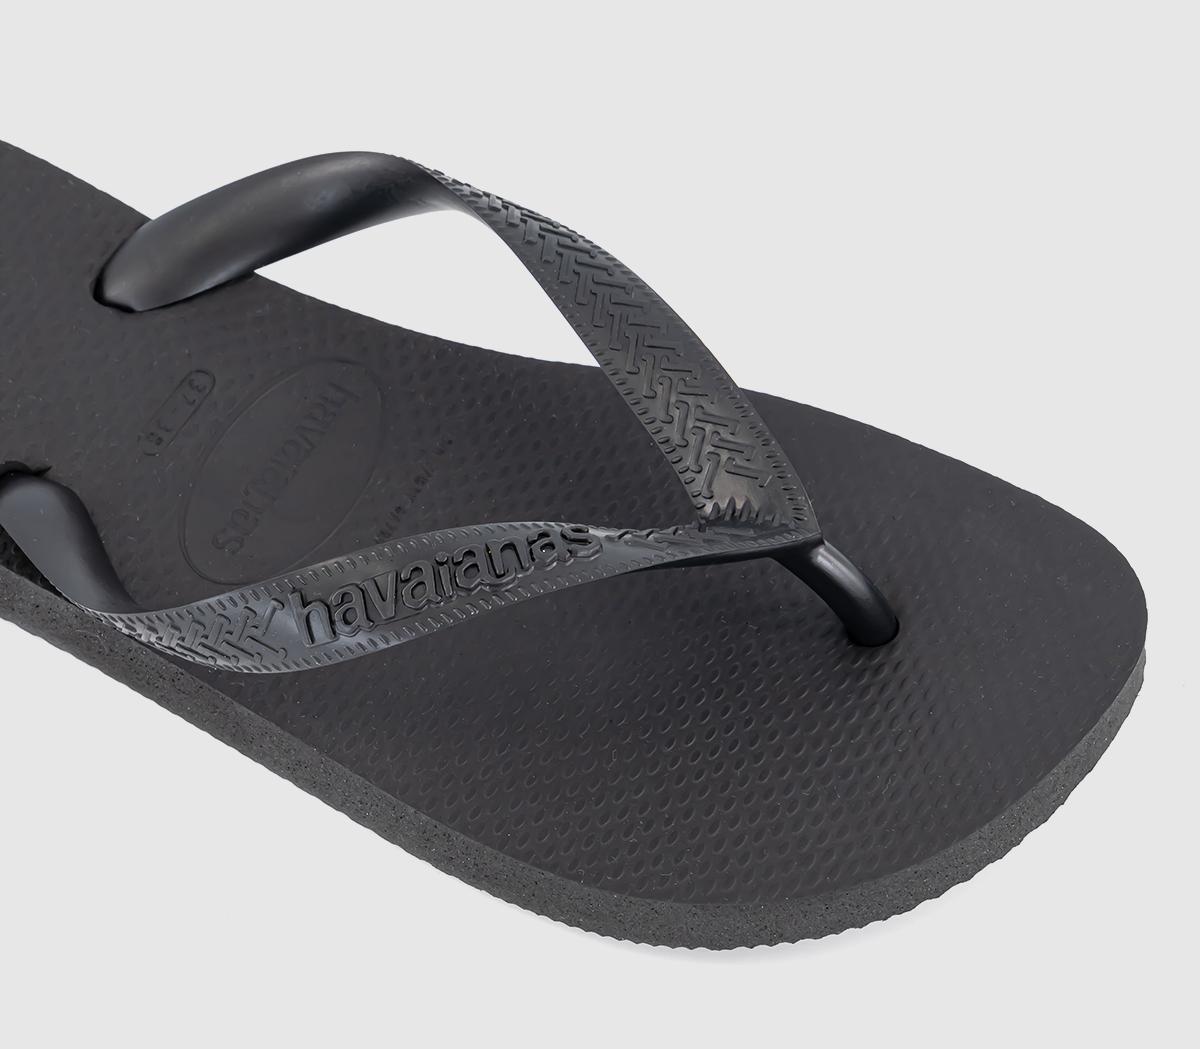 Havaianas Top Flip Flops Black - Sandals